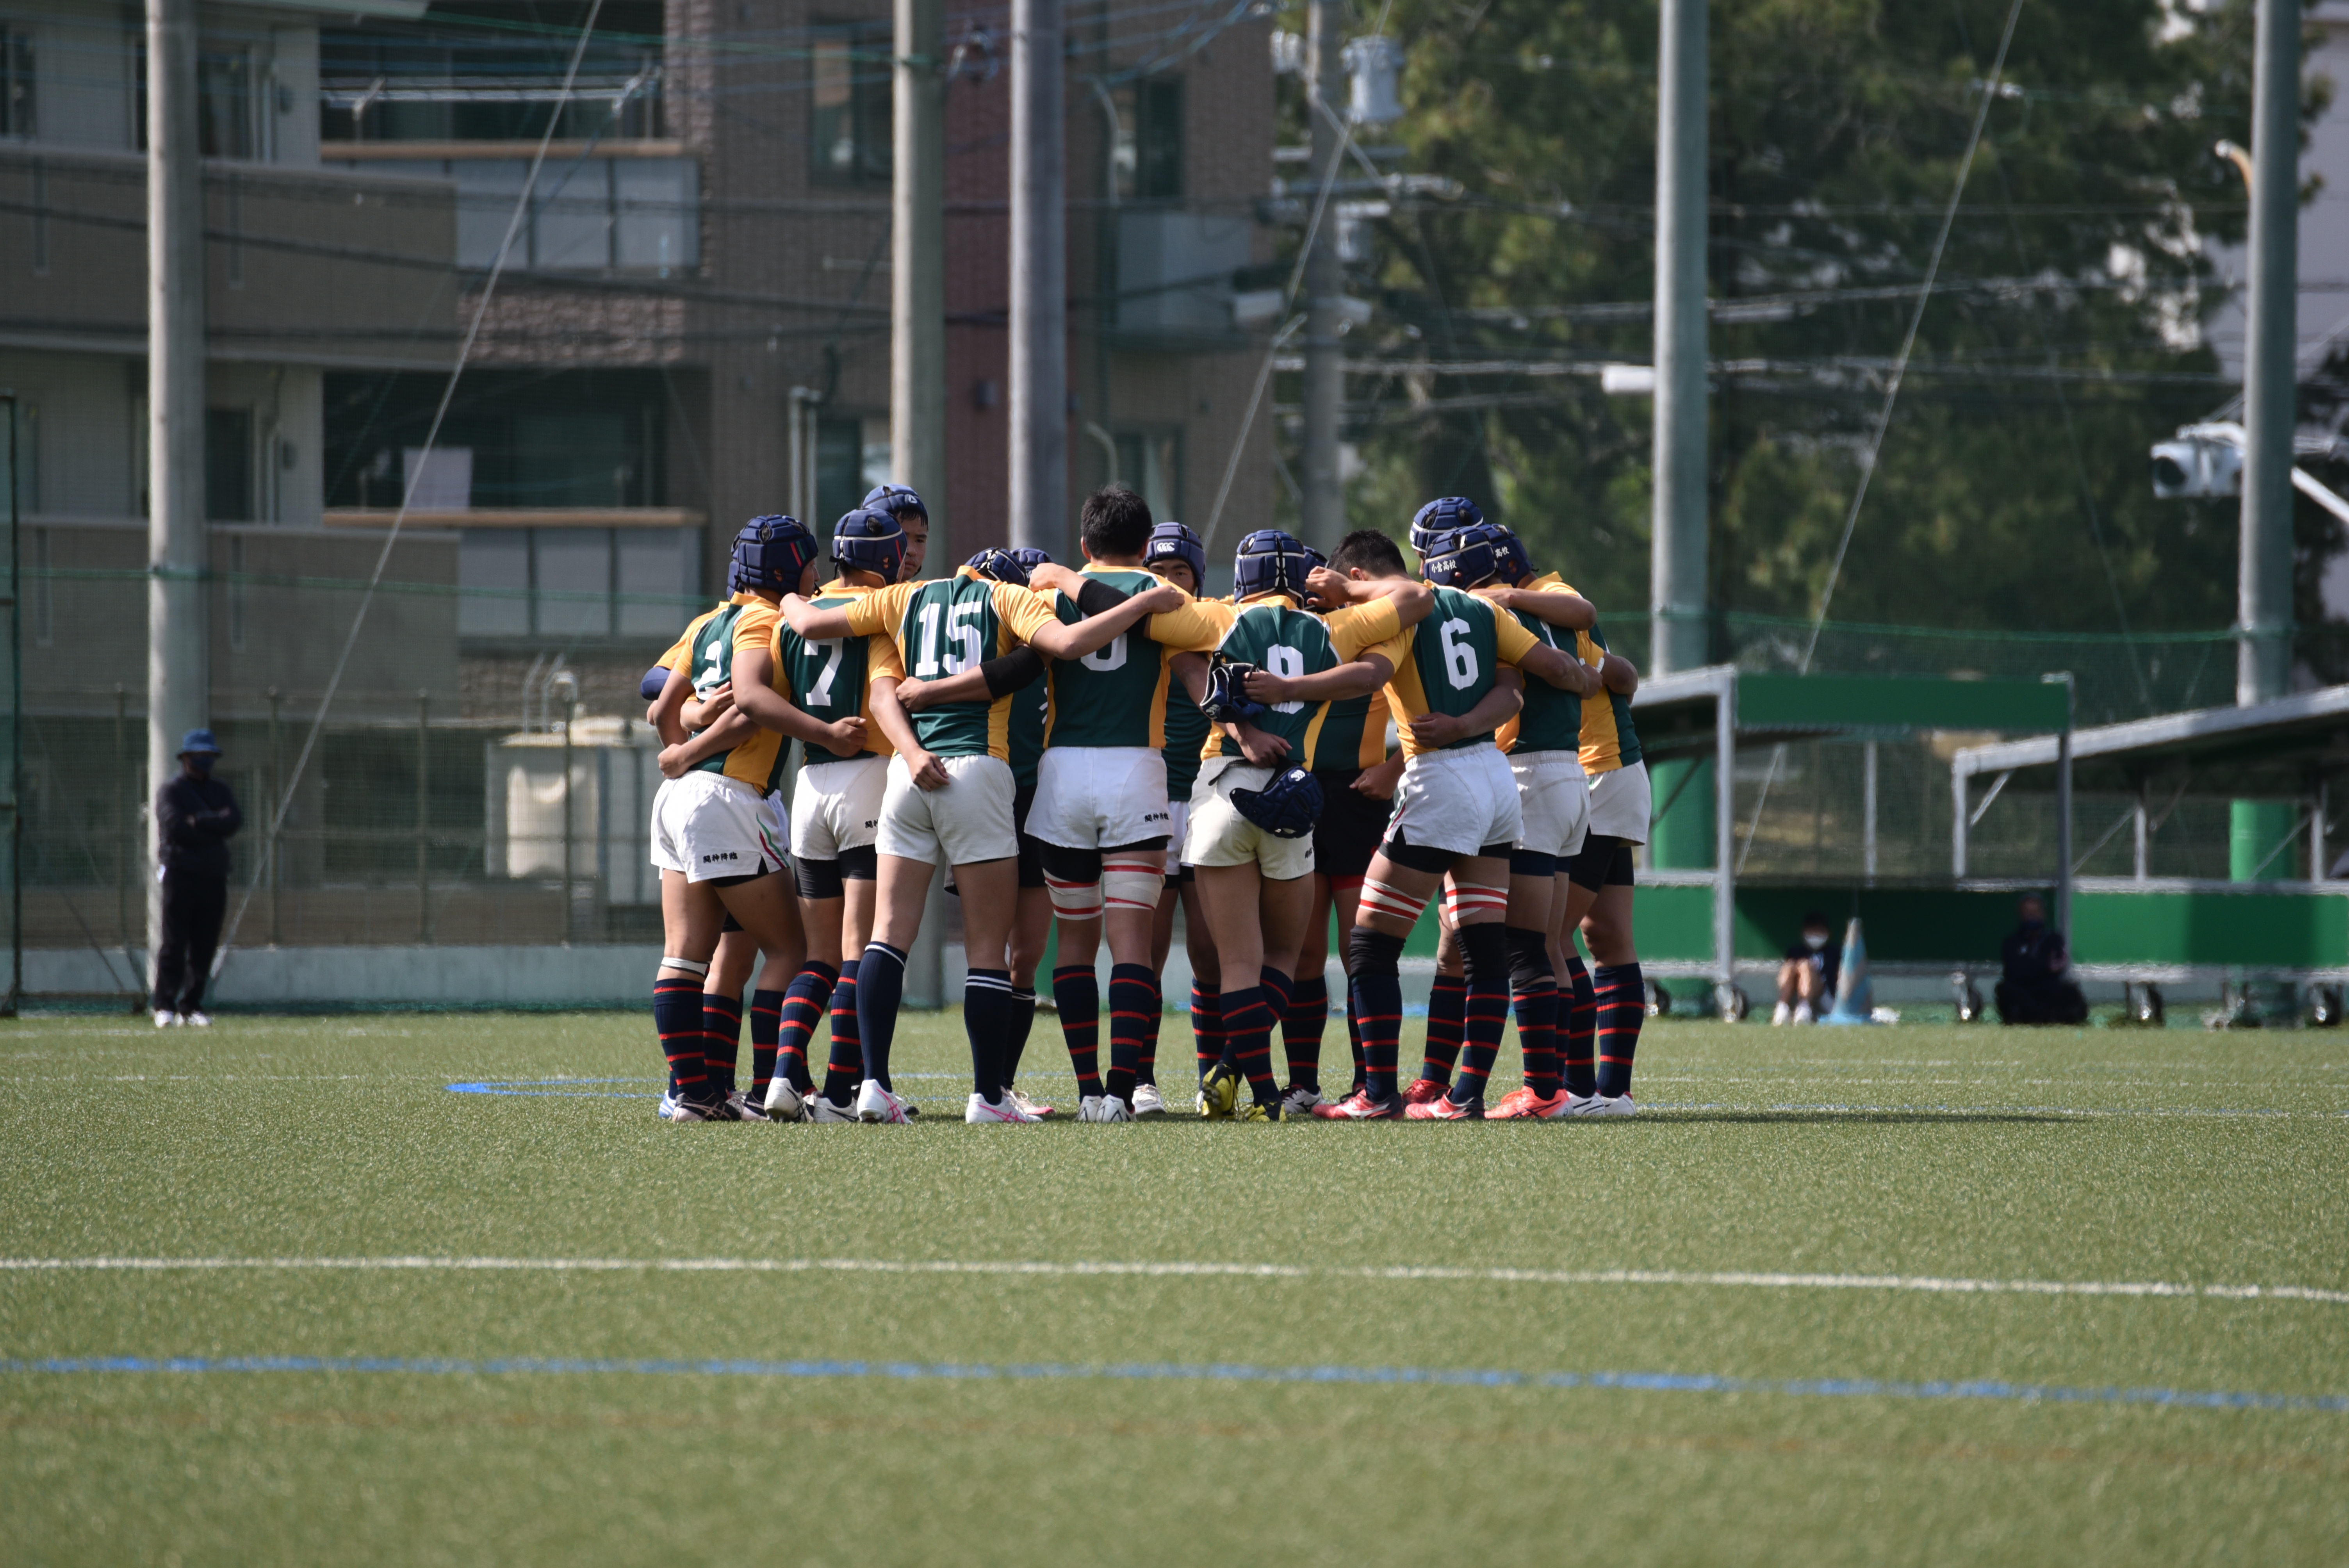 http://kokura-rugby.sakura.ne.jp/DSC_9553%20%281%29_original.JPG